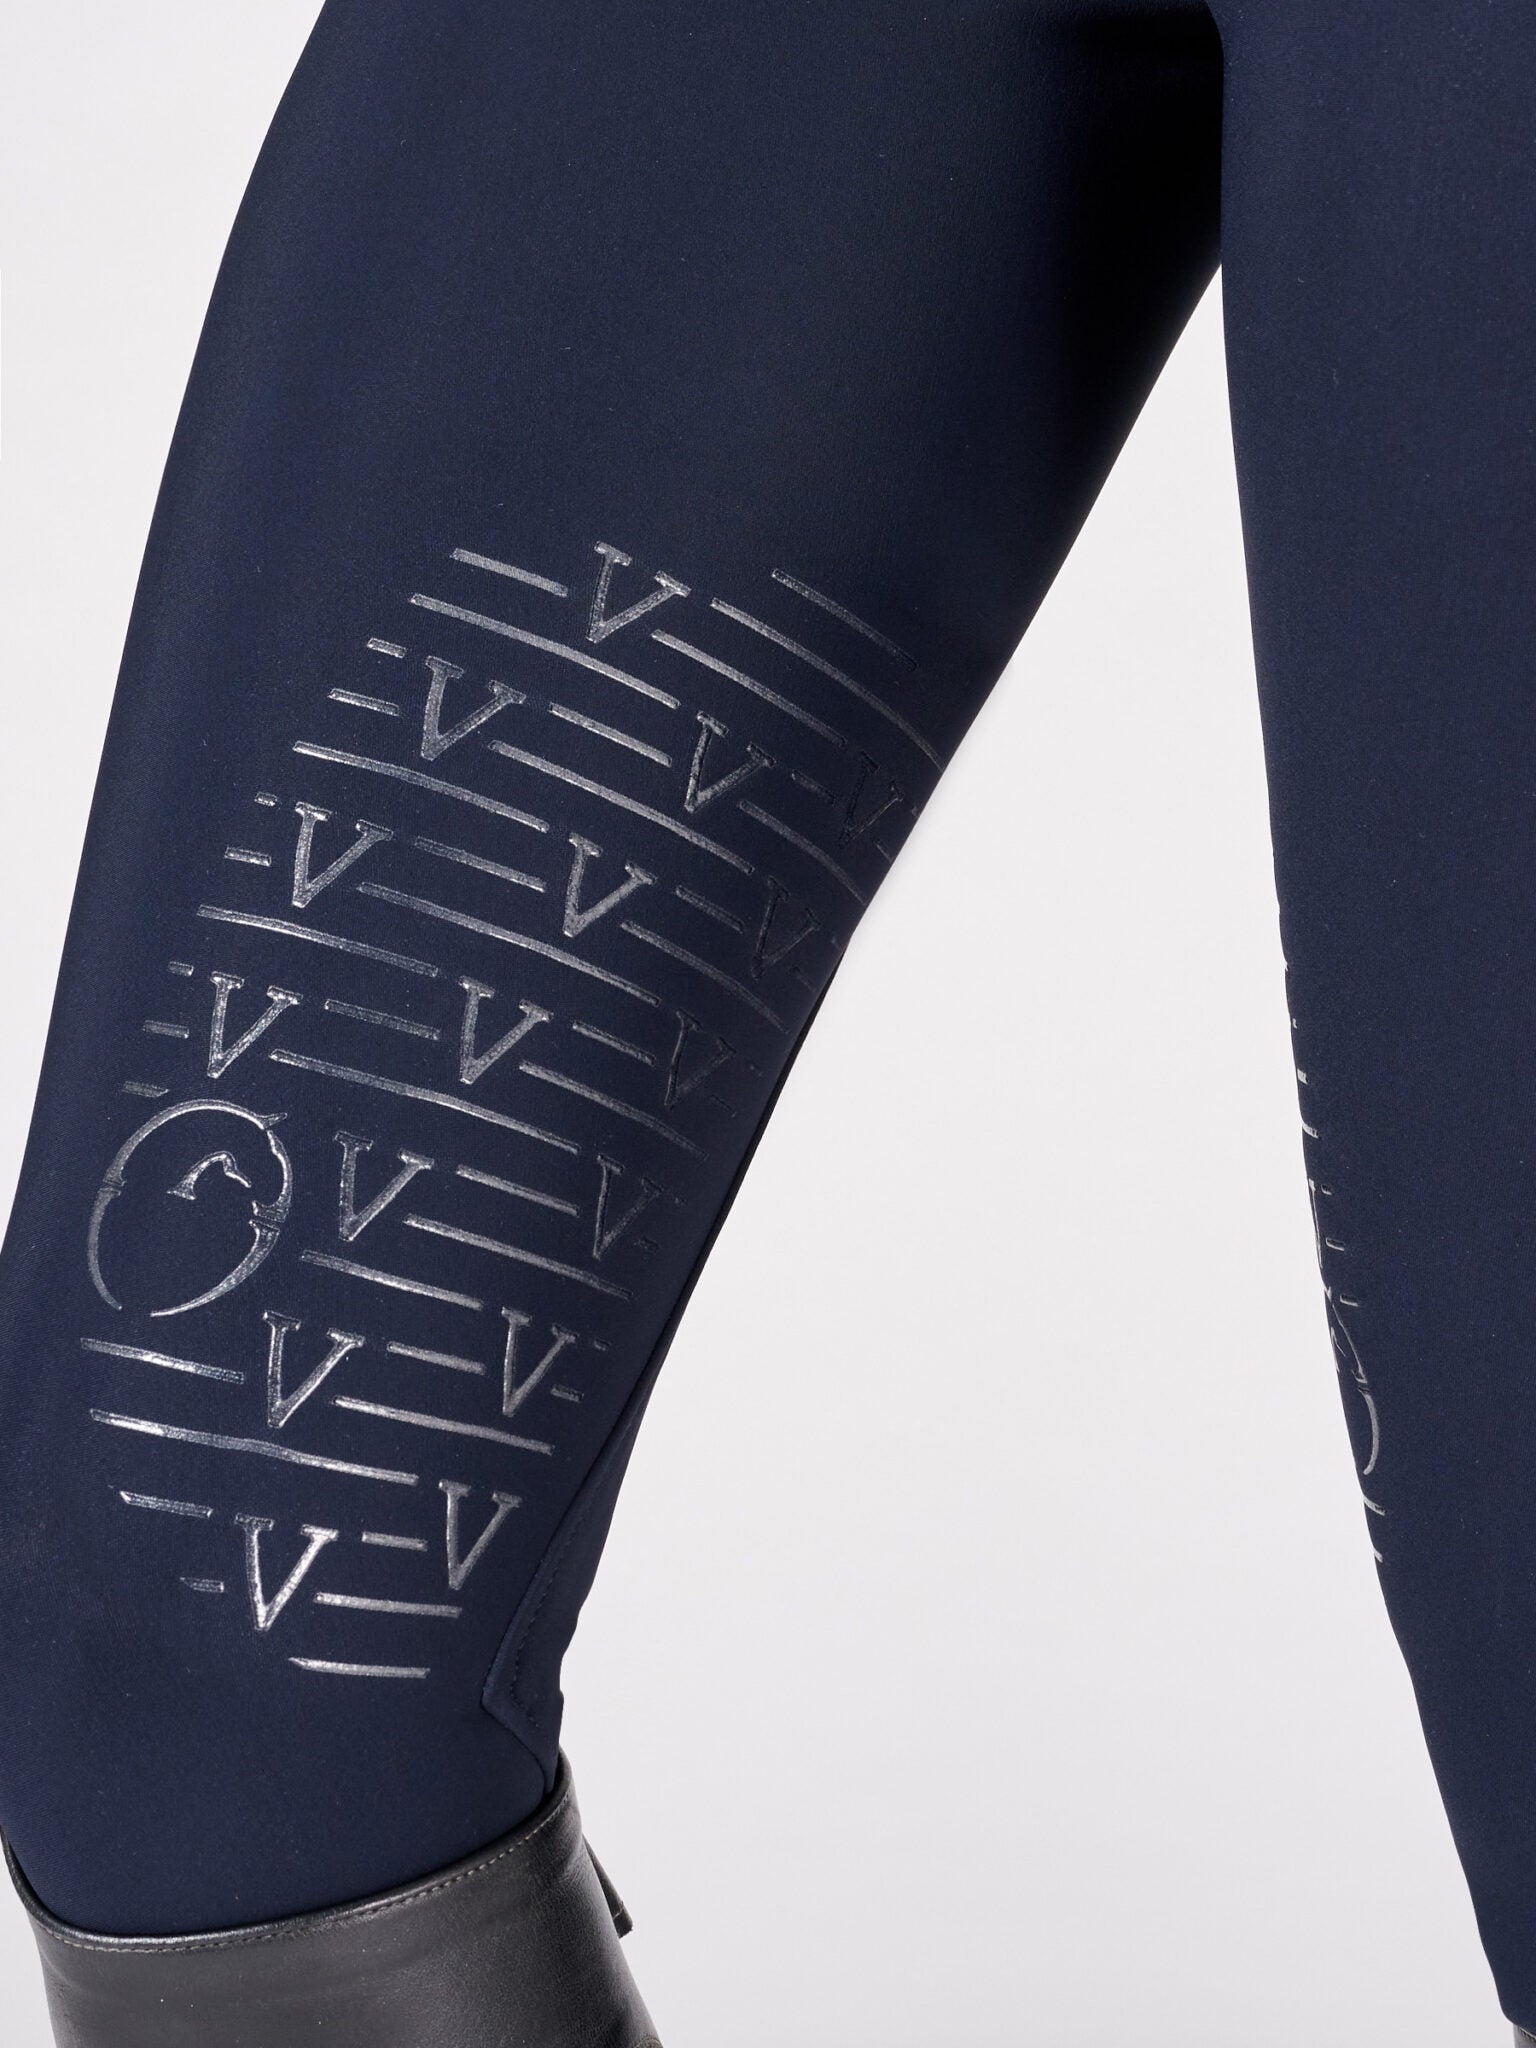 Vestrum Lorient Women's breeches with knee grip